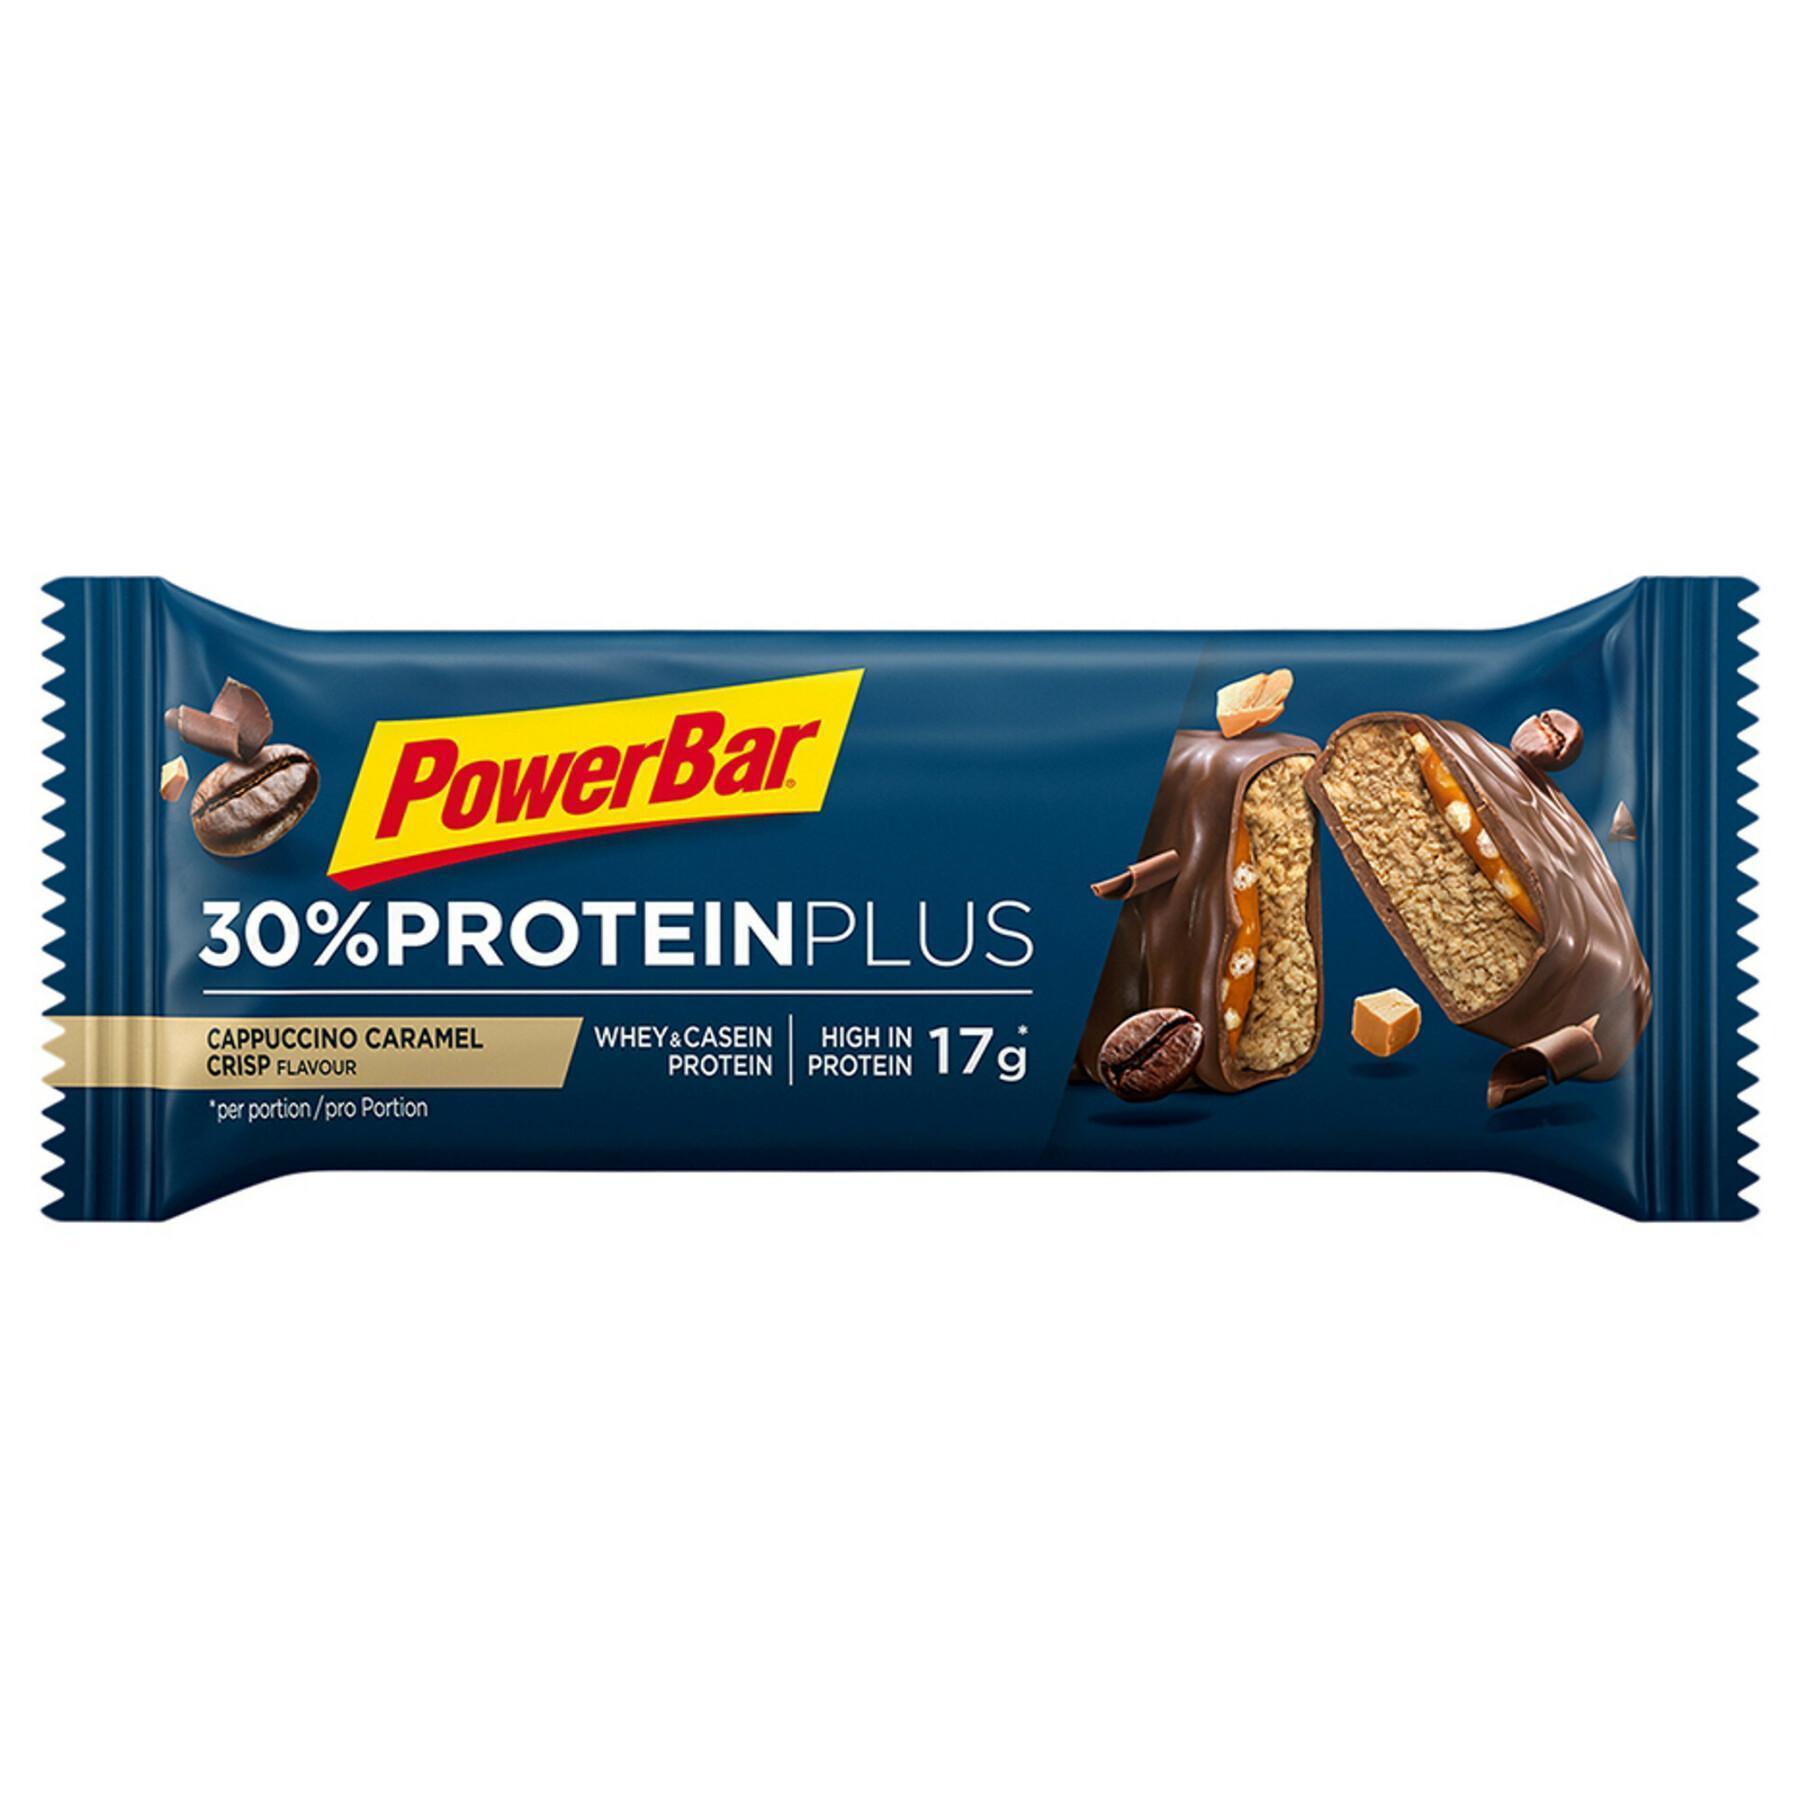 Juego de 15 barras PowerBar ProteinPlus 30 % - Cappuccino-Caramel-Crisp